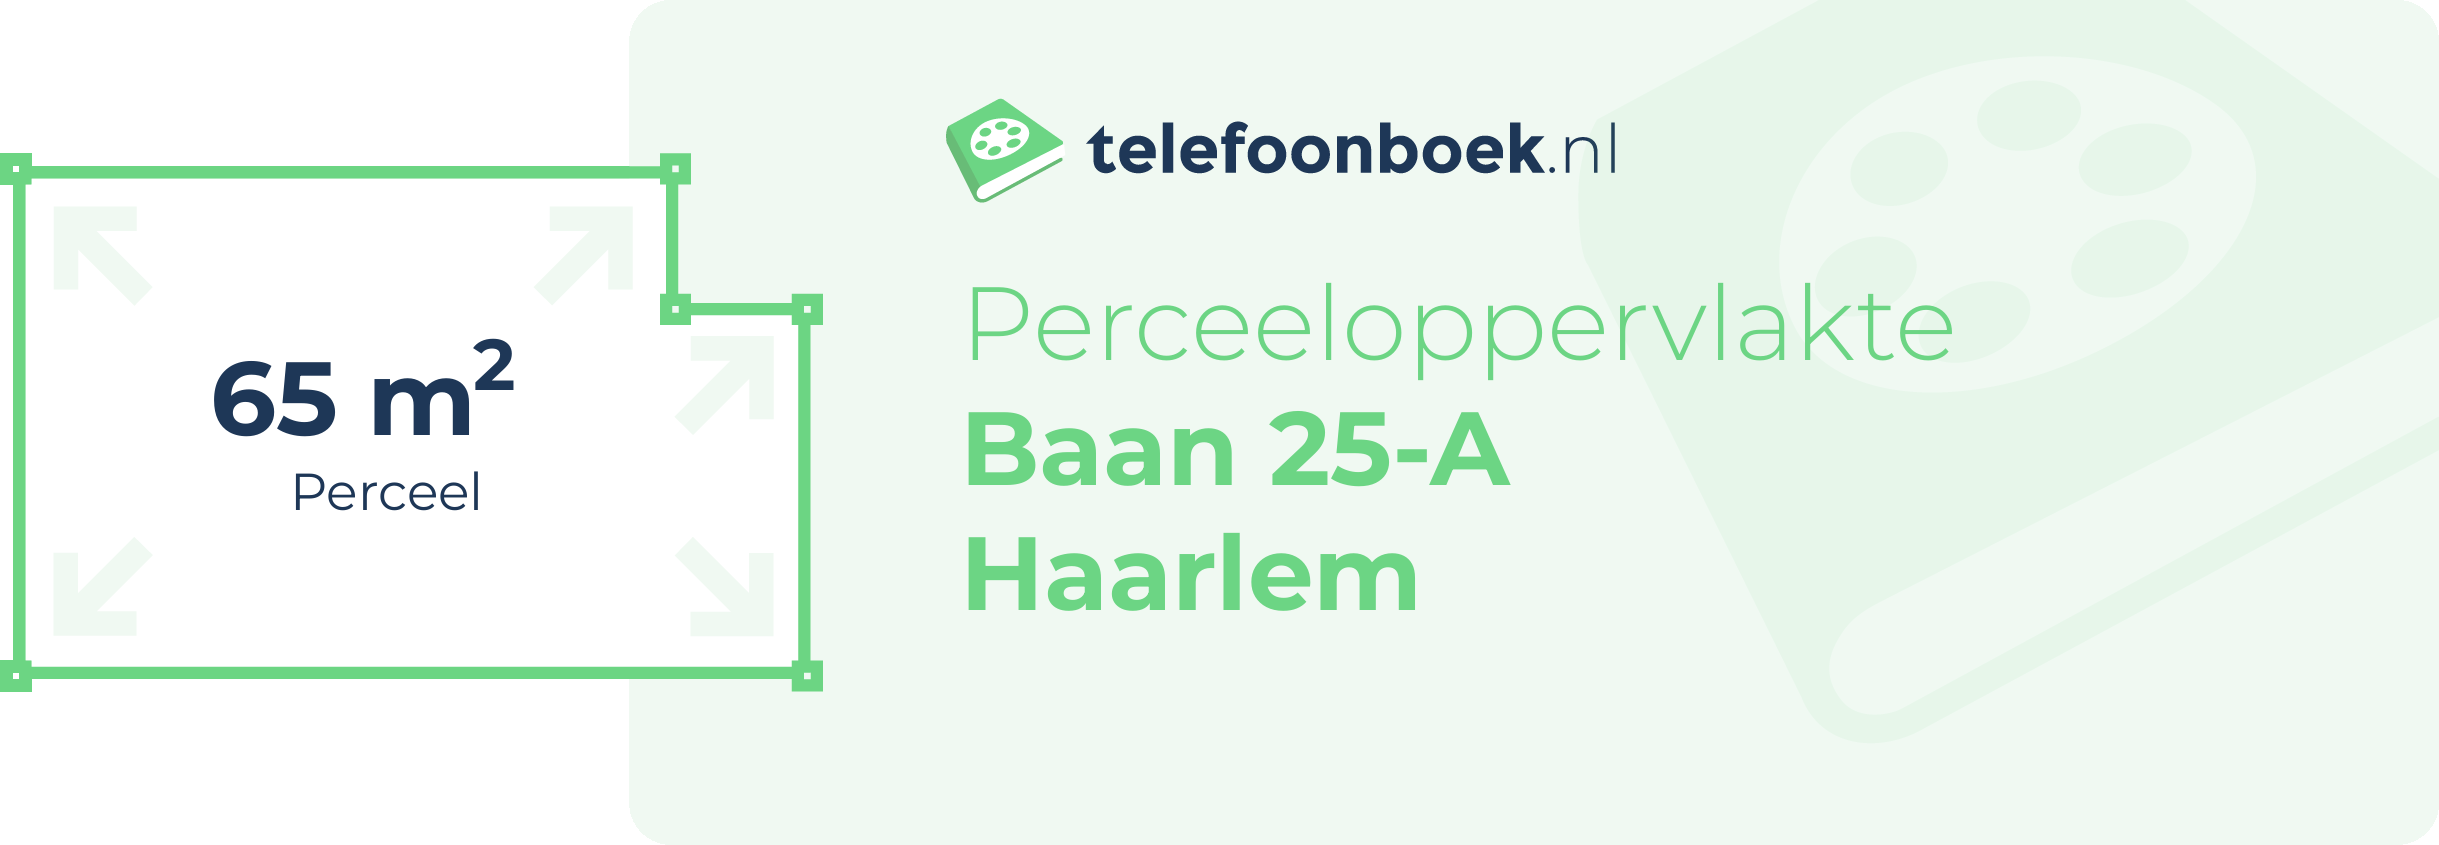 Perceeloppervlakte Baan 25-A Haarlem